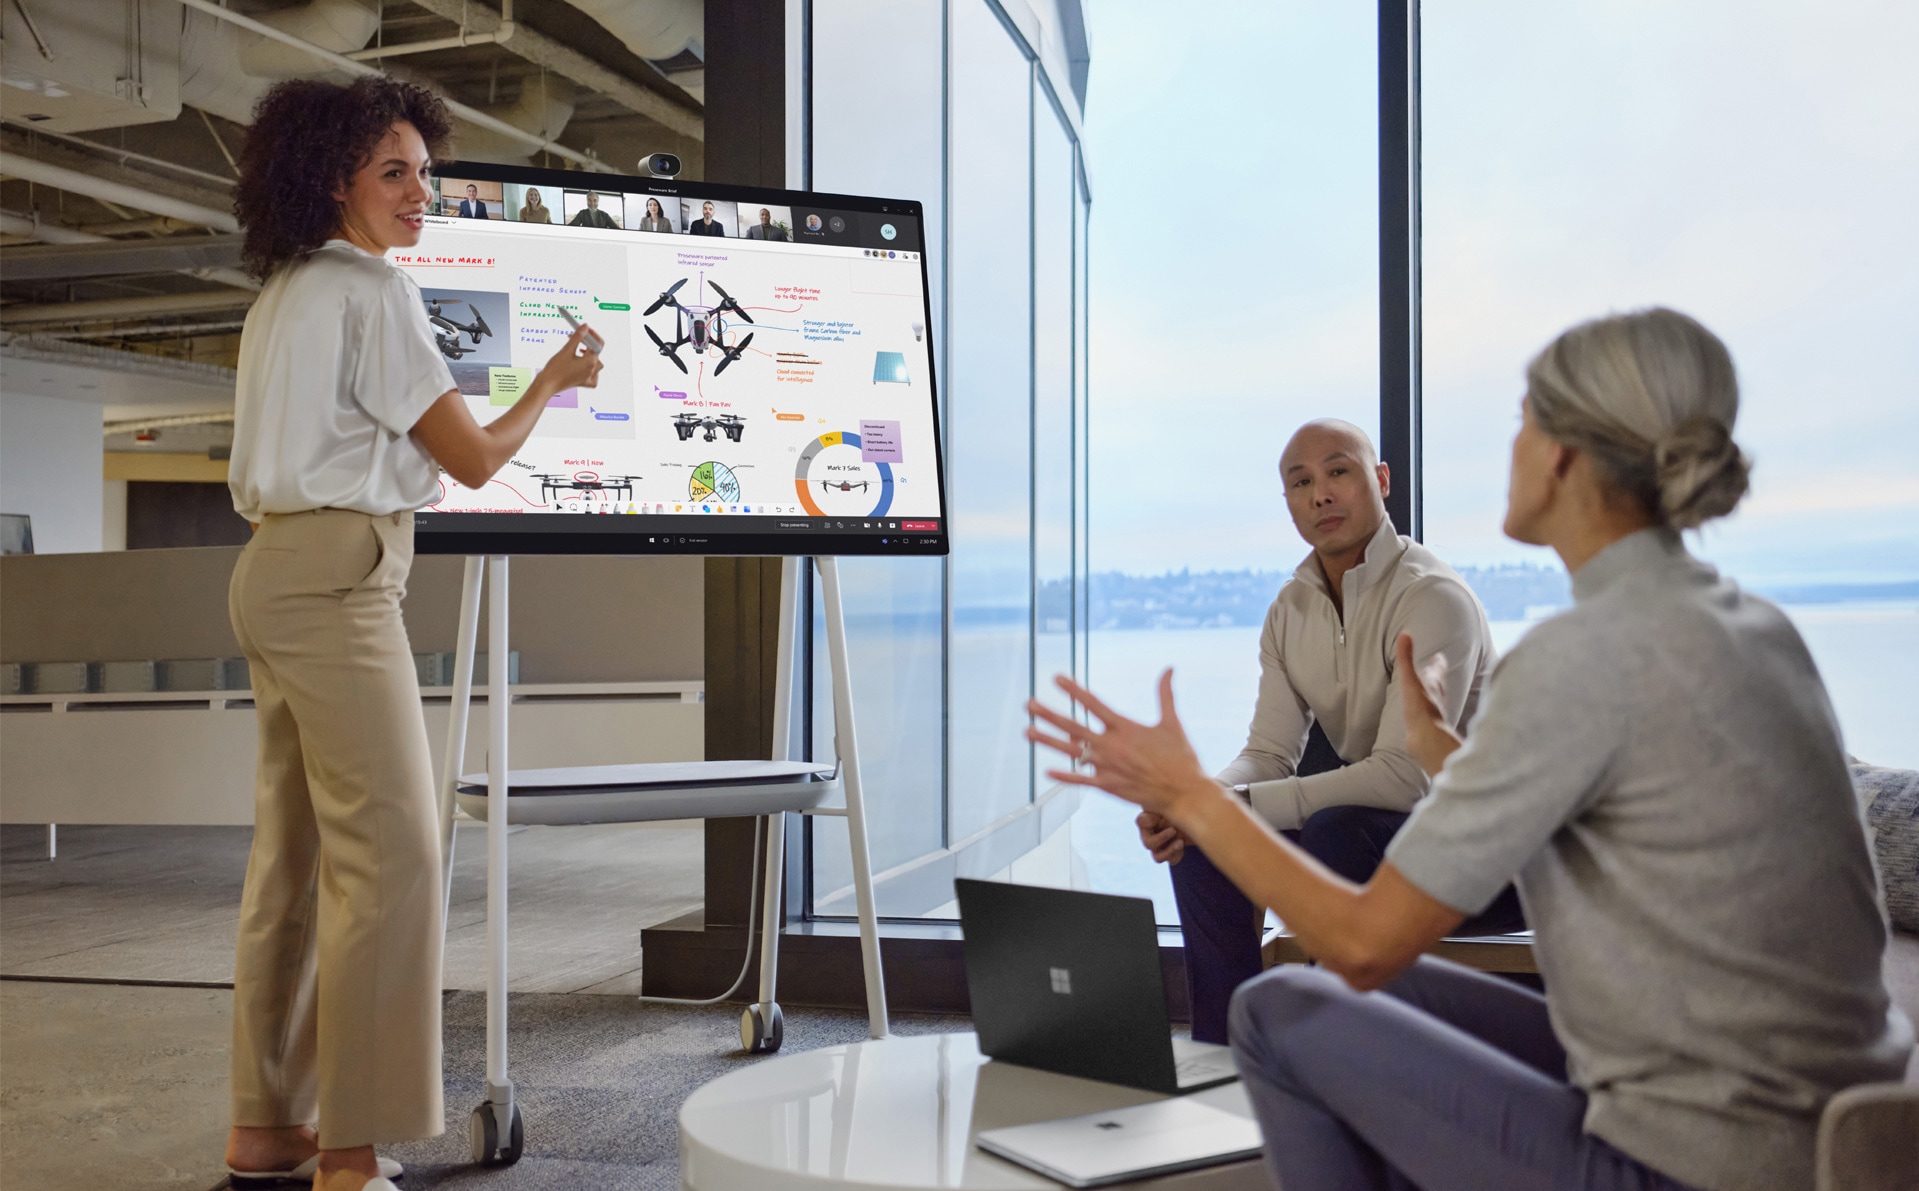 Colegi de muncă prezenți fizic interacționează cu o prezentare PowerPoint în Teams, în timp ce colegii care lucrează de la distanță observă